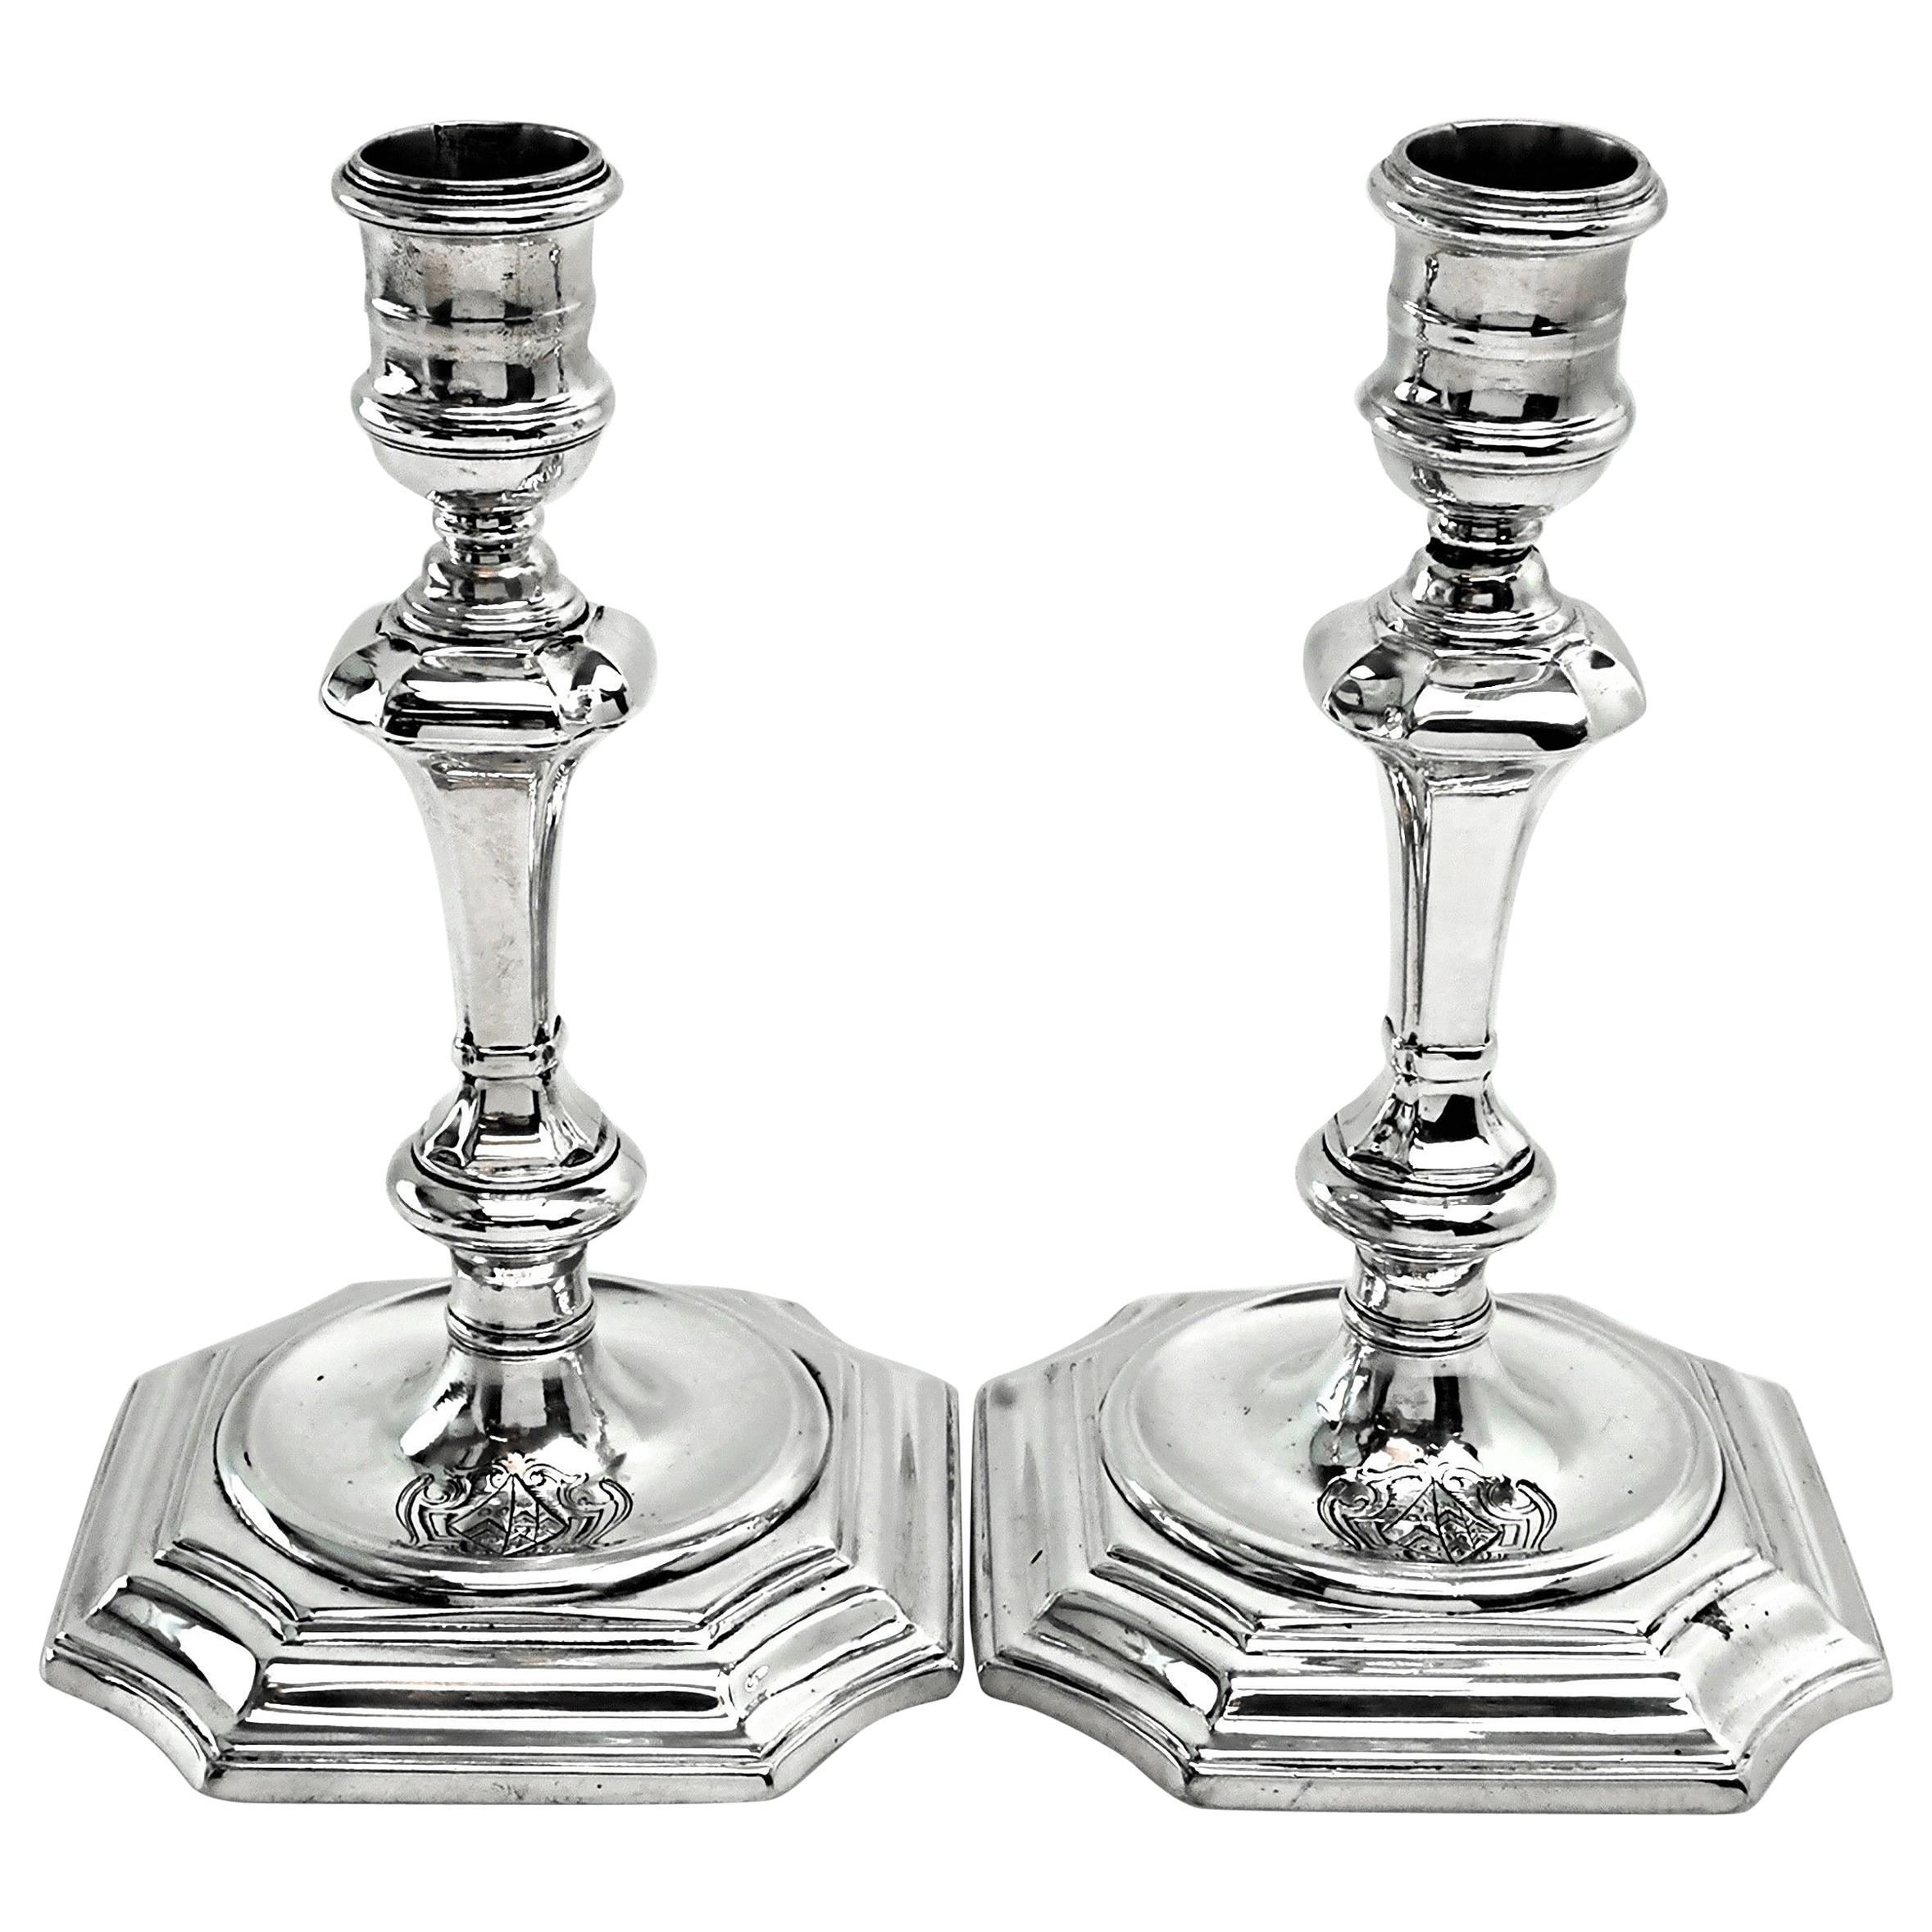 Paar antike georgianische Silber-Kerzenständer / Kerzenhalter aus der Zeit Georgs I. 1724